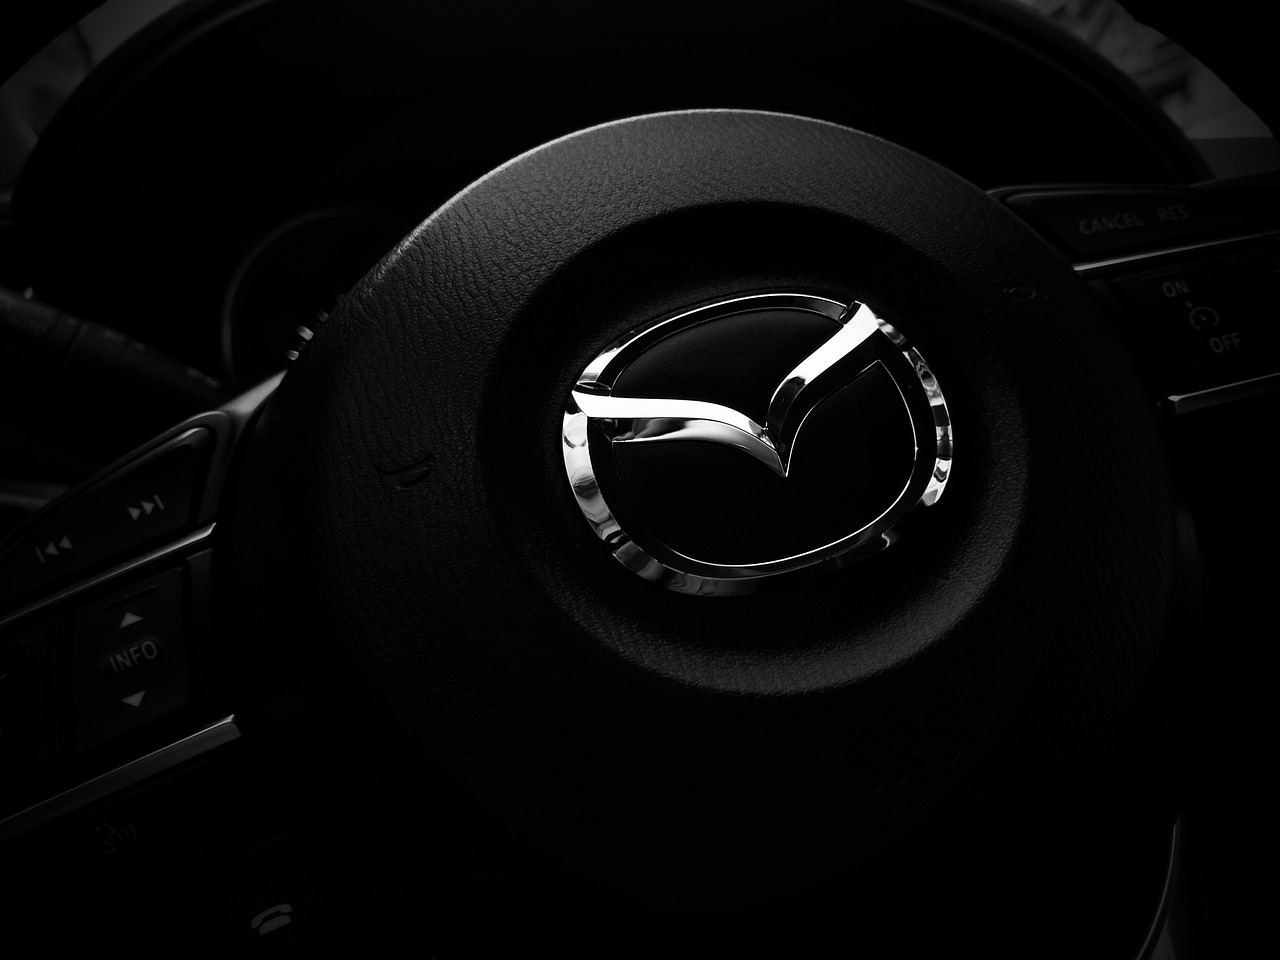 A Mazda steering wheel